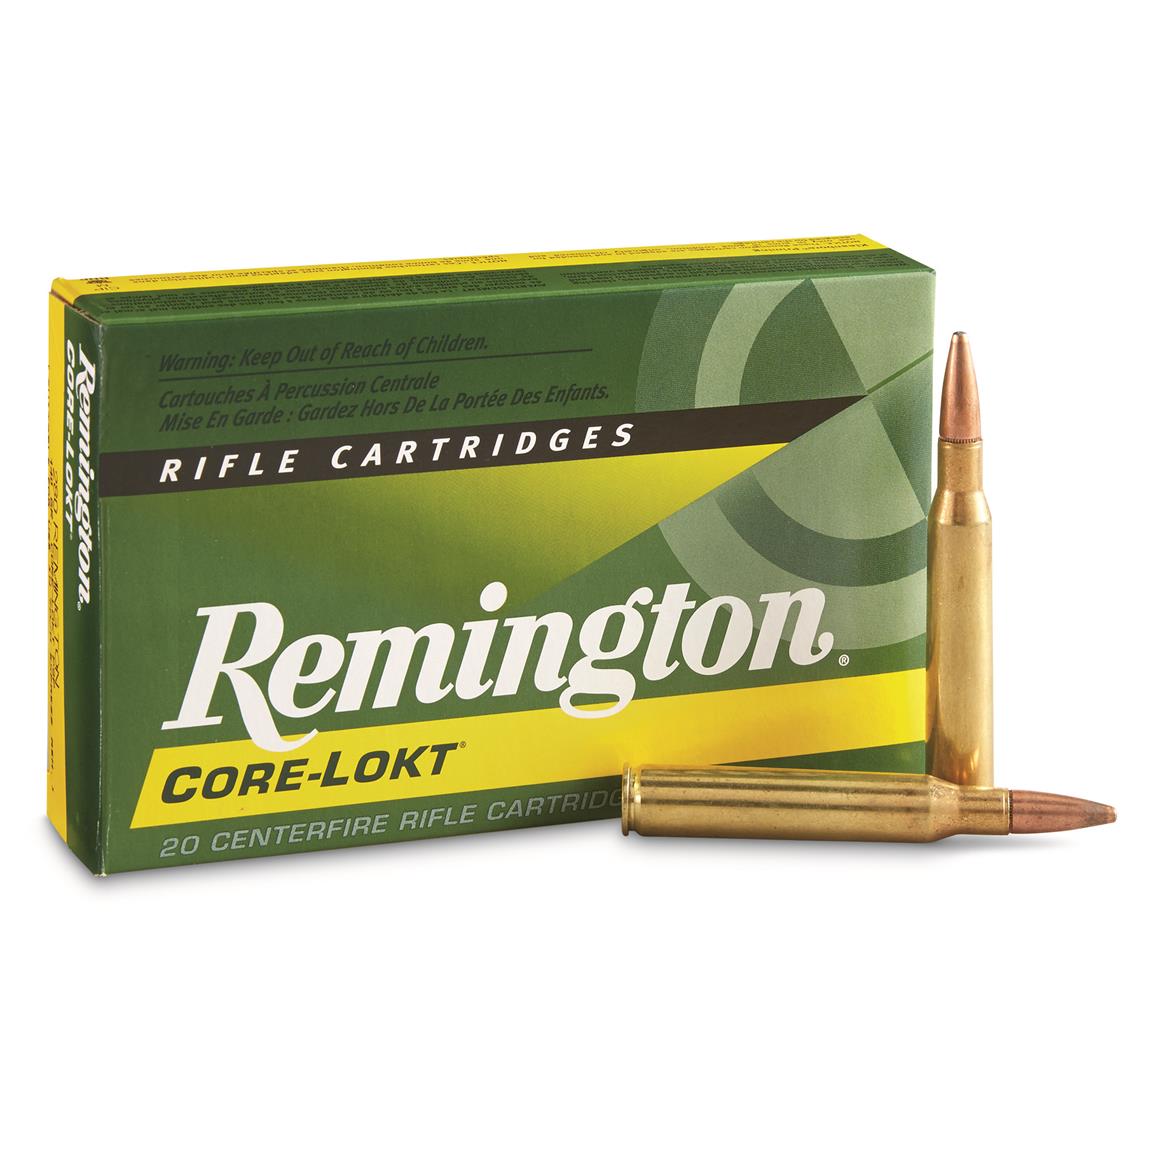 Onset gennembore Kartofler Remington, .280 Remington, PSP Core-Lokt, 140 Grain, 20 Rounds - 12069,  .280 Remington Ammo at Sportsman's Guide